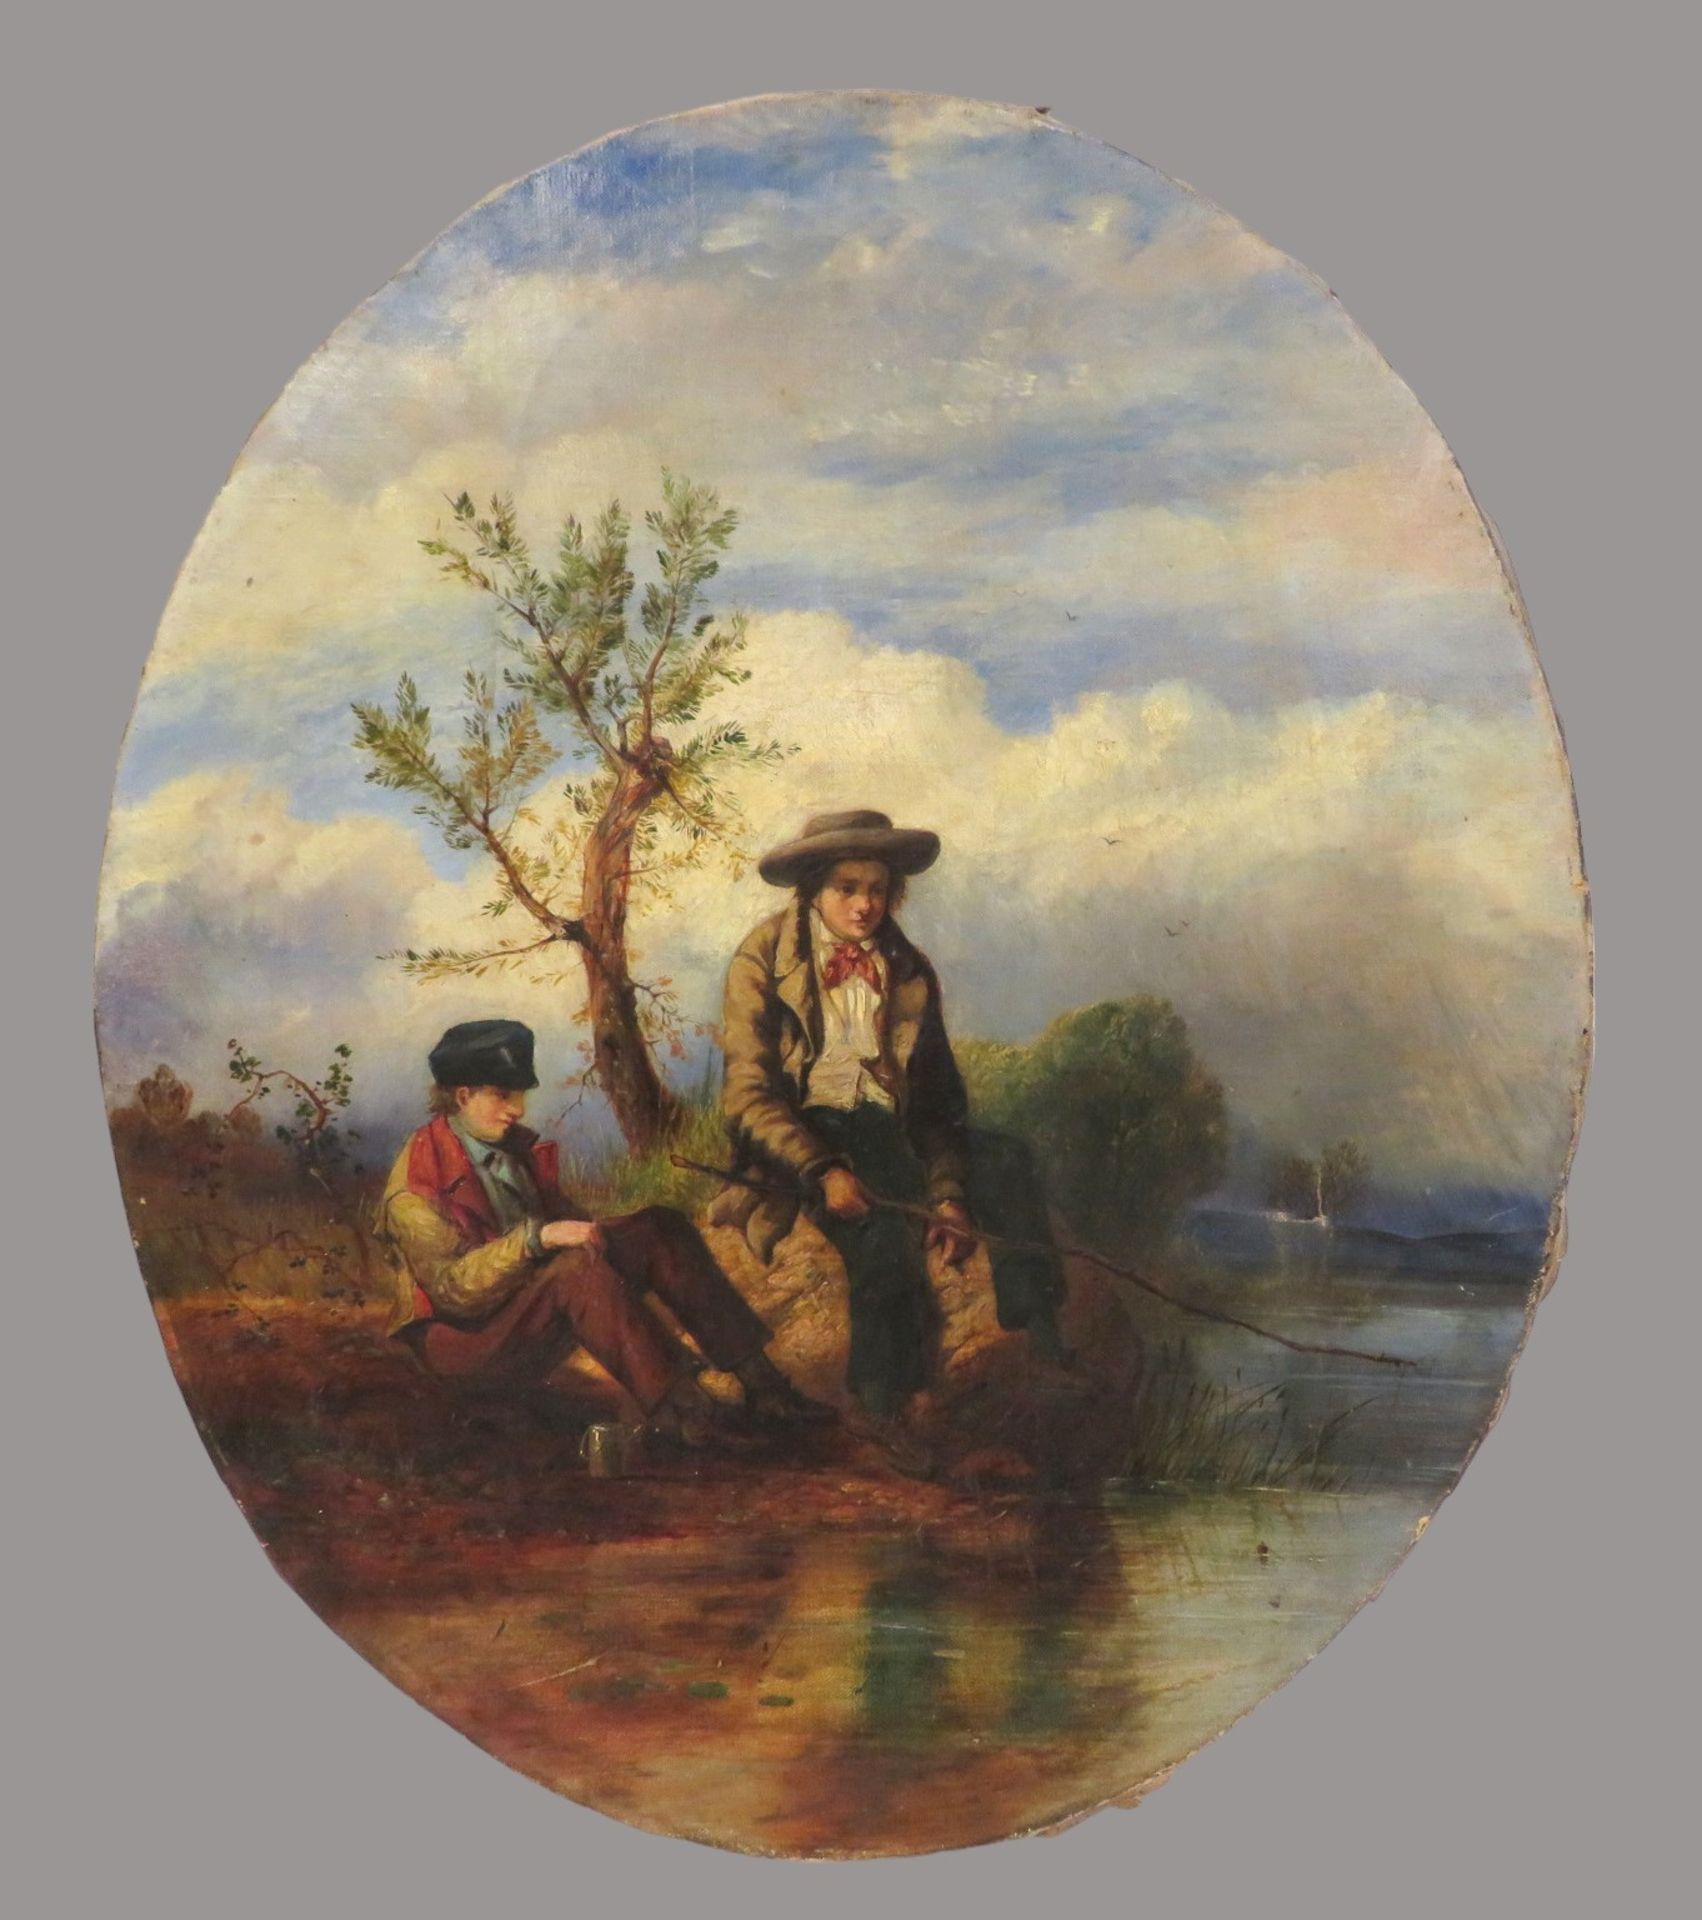 England, Mitte 19. Jahrhundert, "Zwei junge Angler am Fluss", Öl/Leinwand, Riss im rechten Bildauss